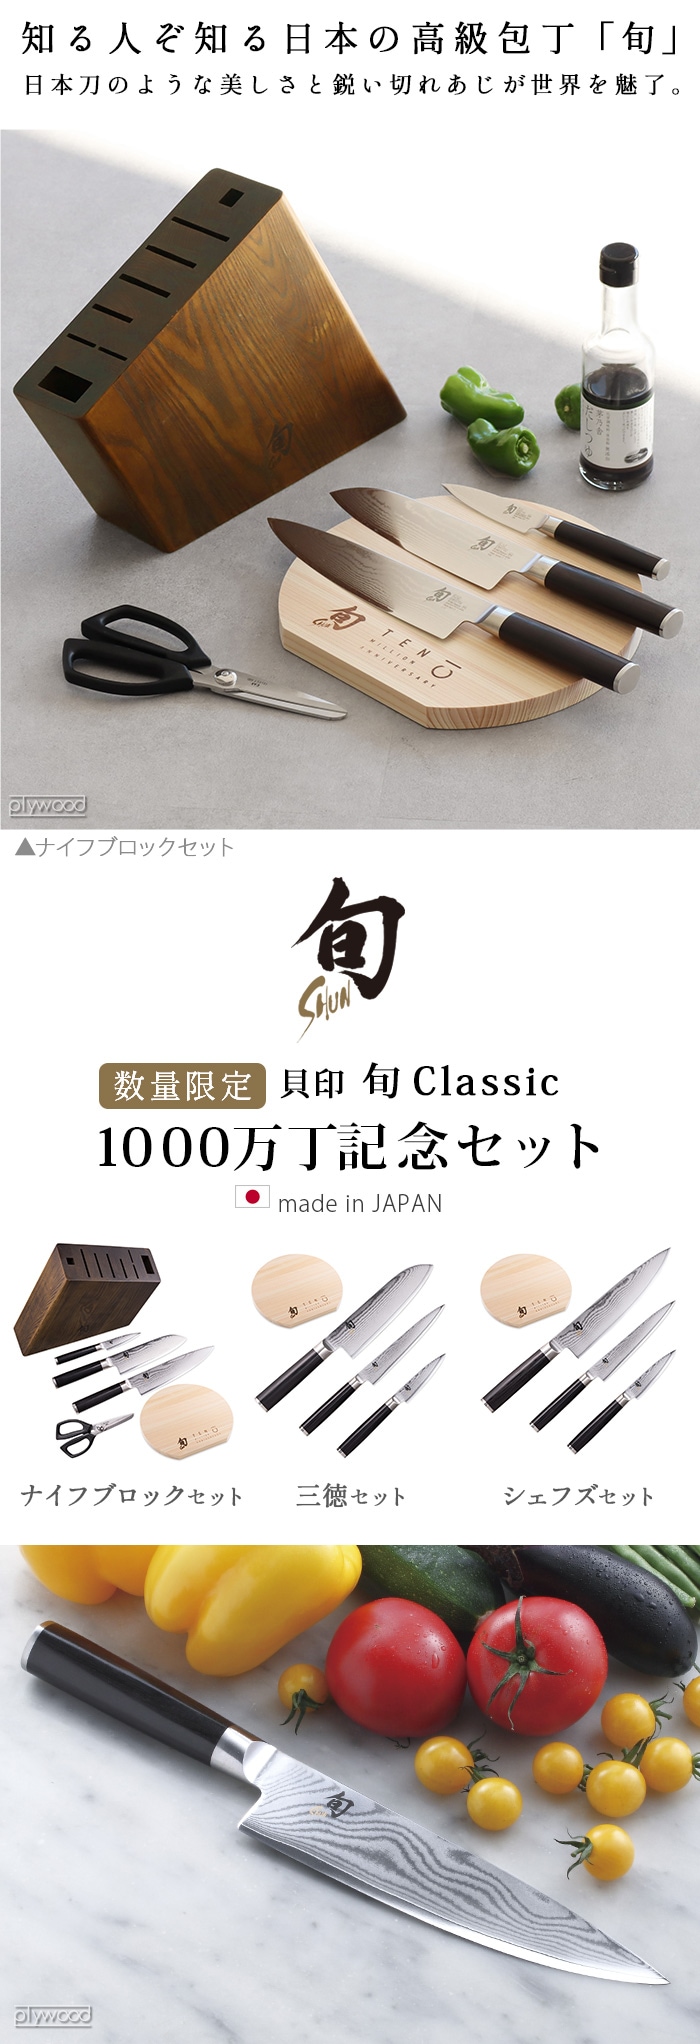 旬 Classic クラシック 1000万丁記念 三徳セット Shun Classic DMS0310